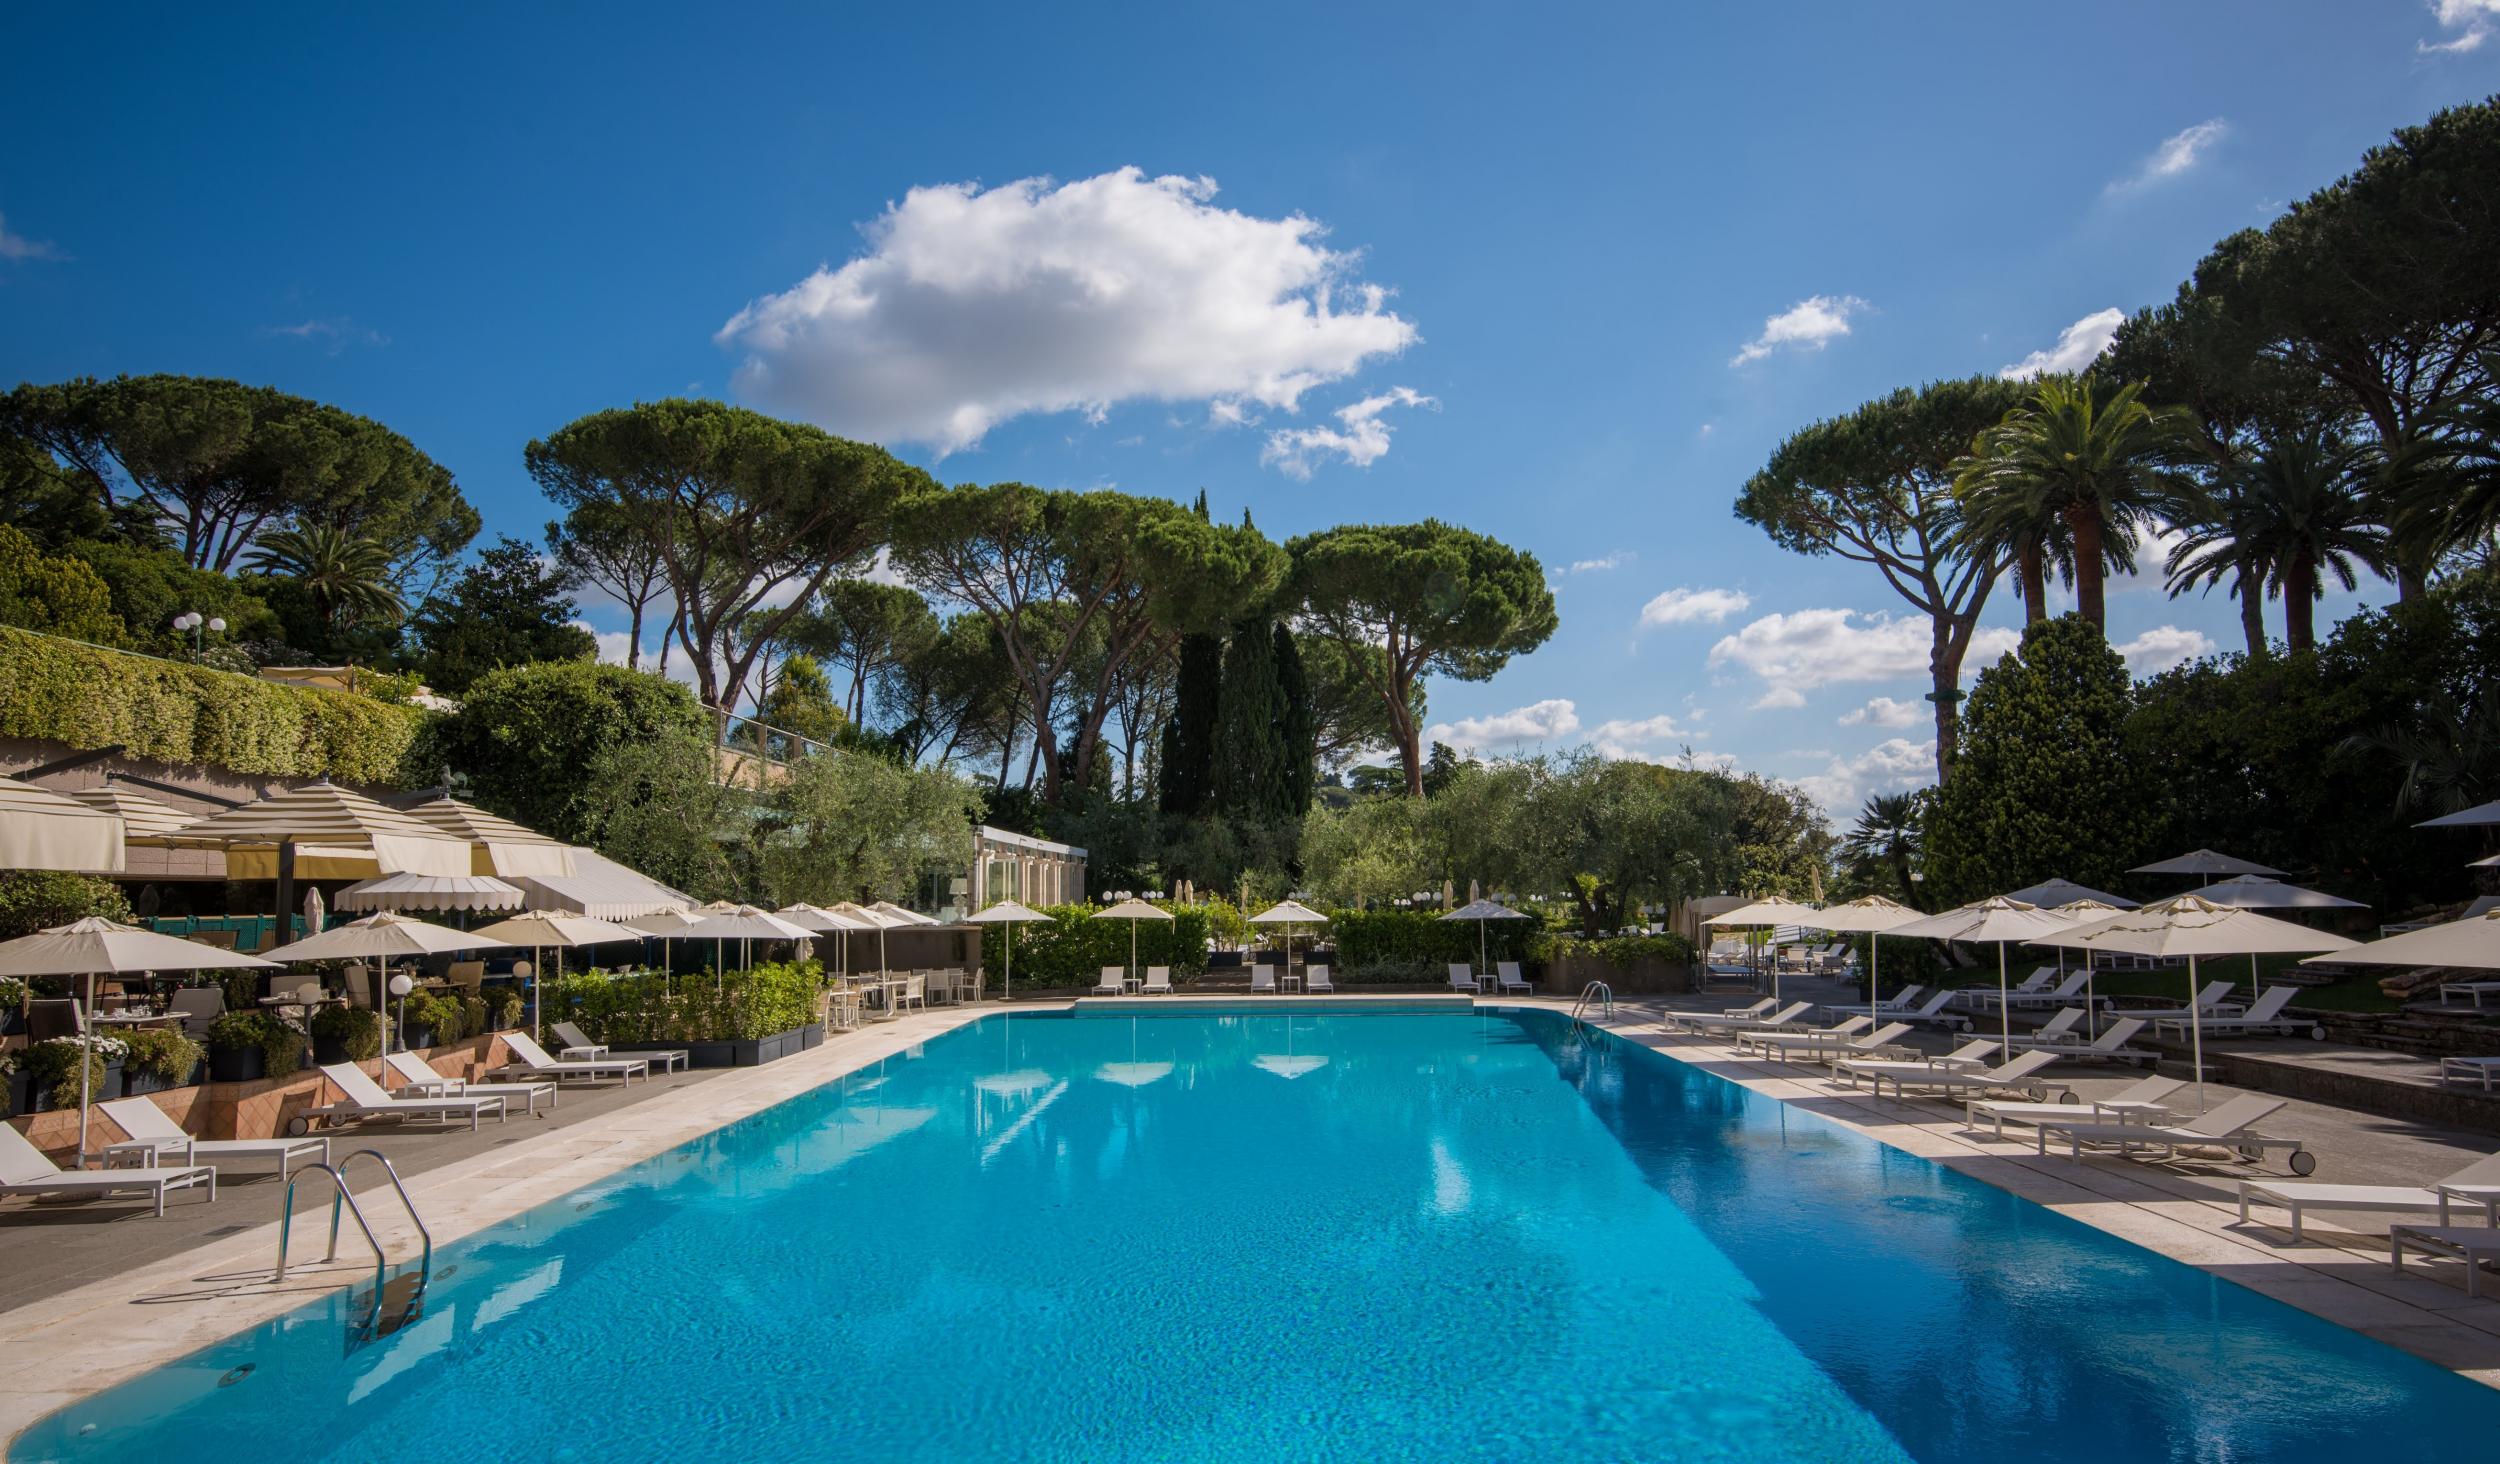 The pool at Rome Cavalieri